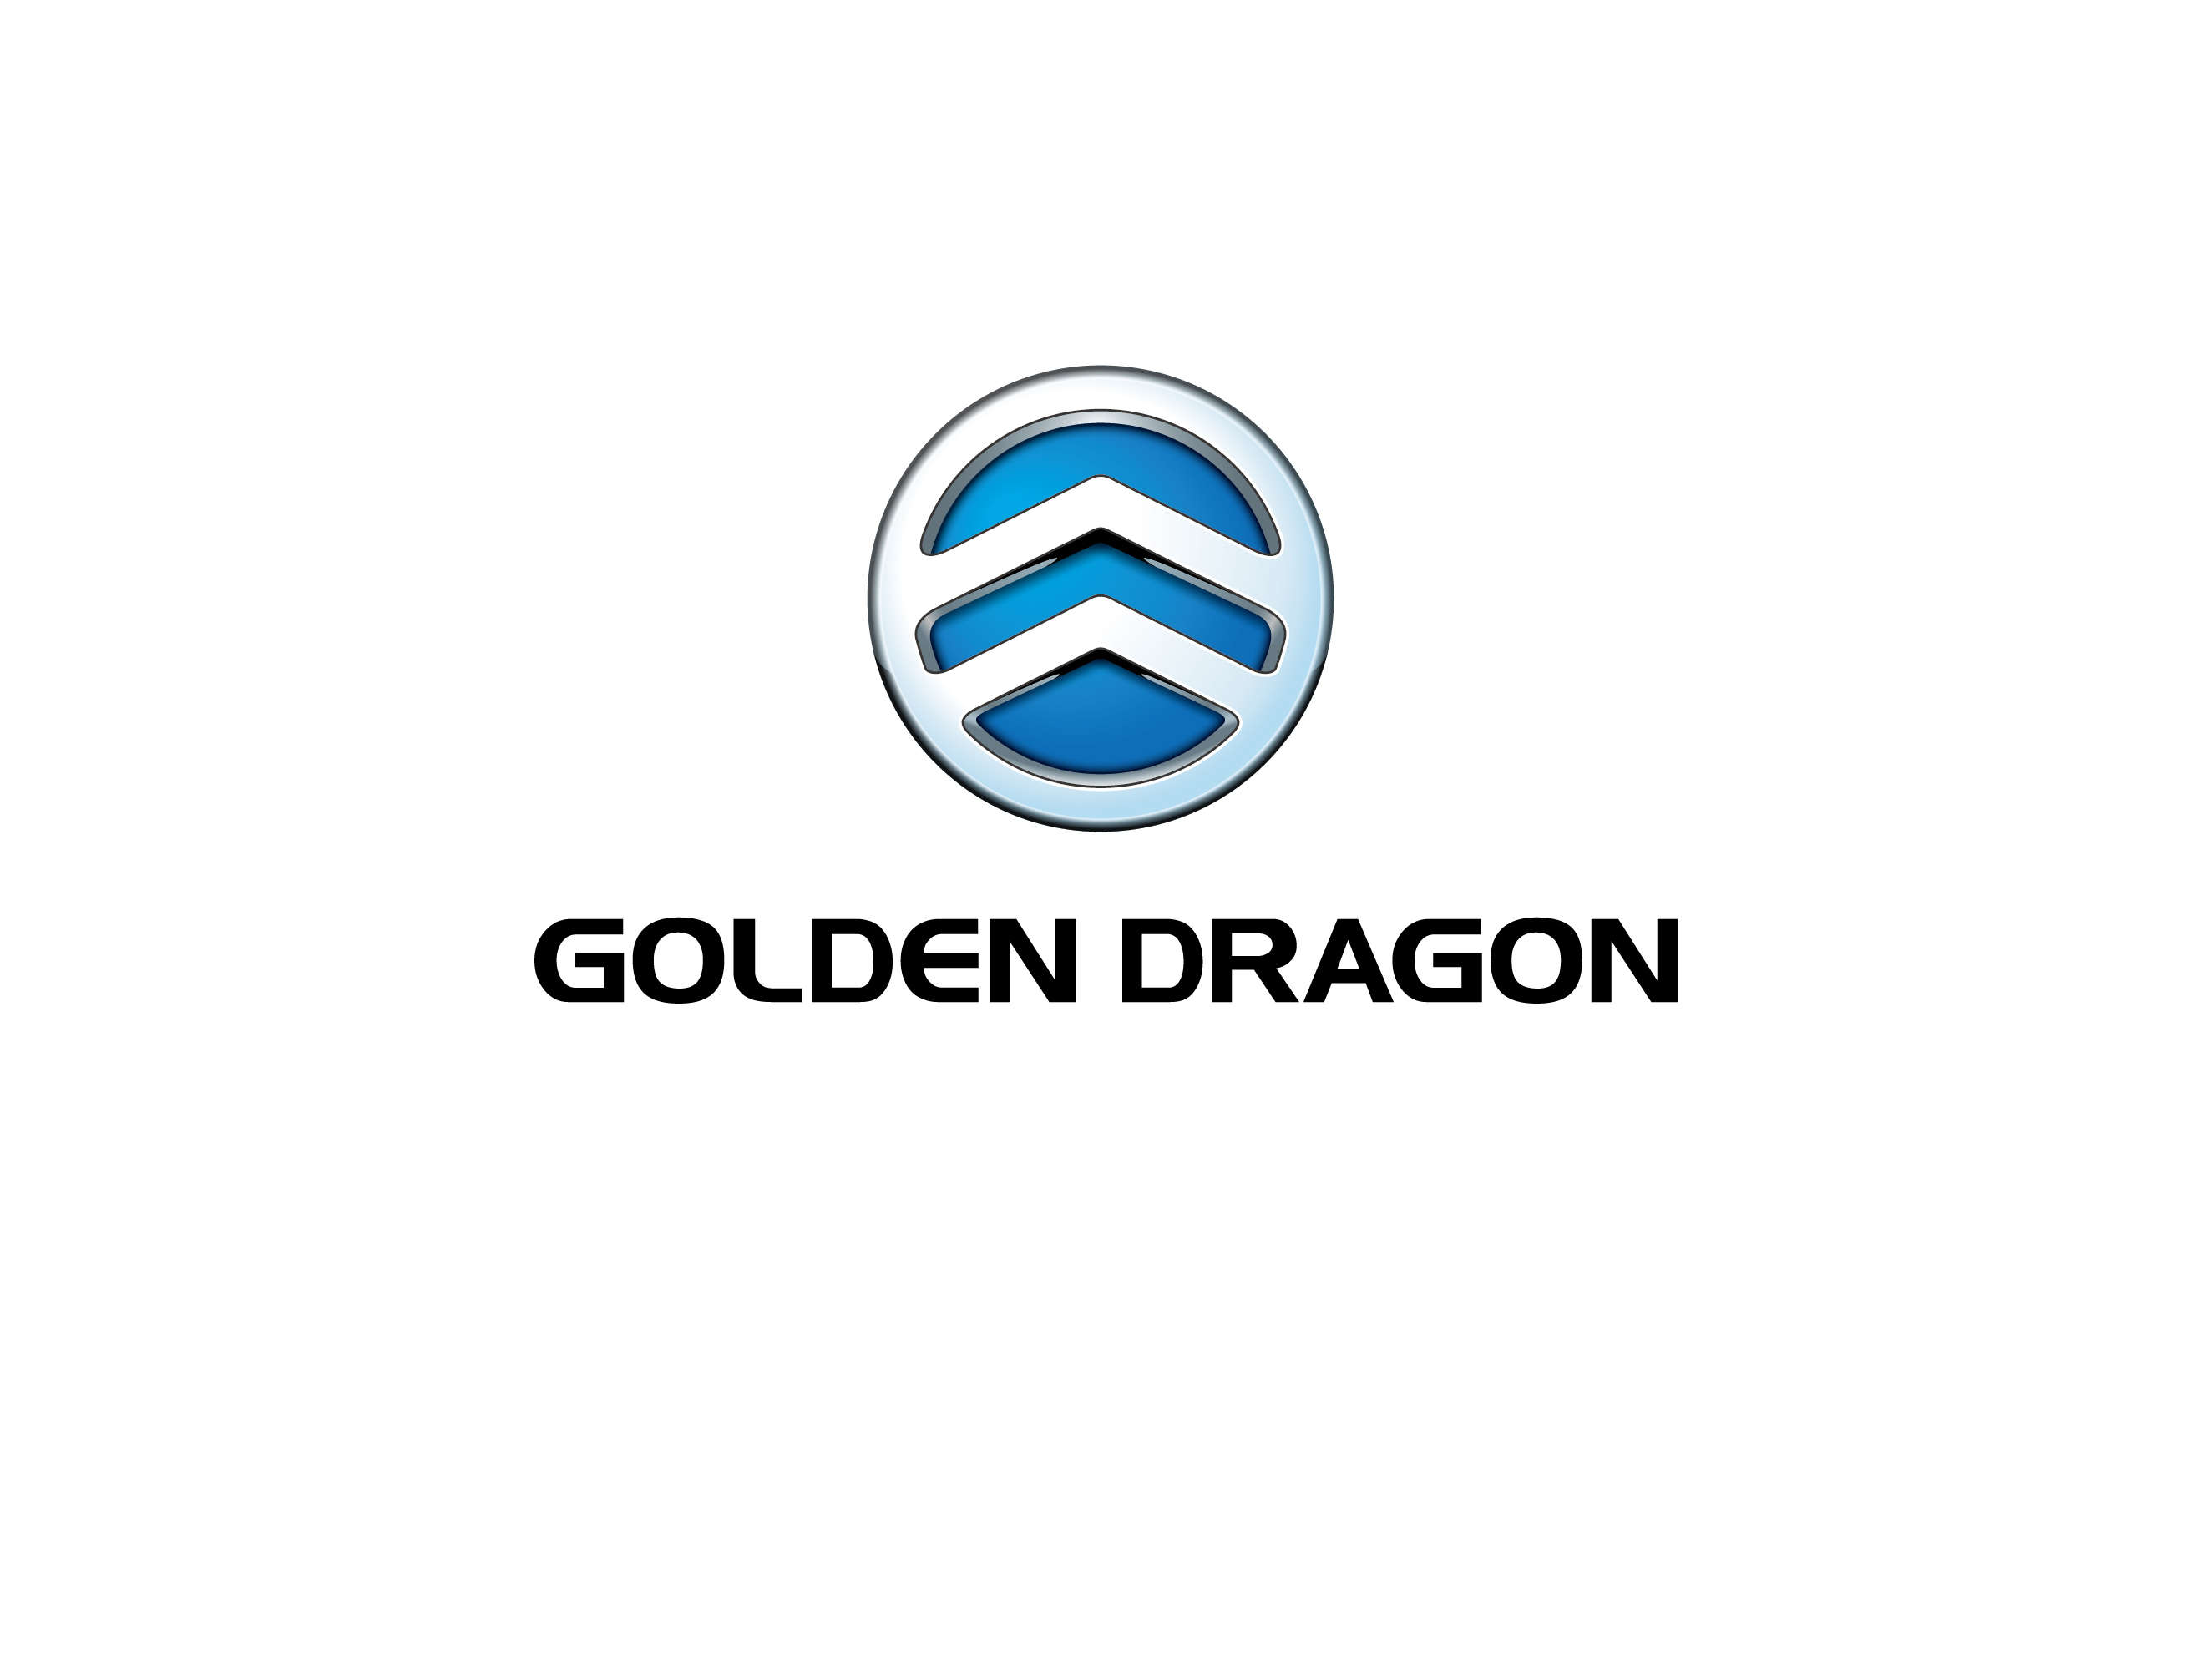 Присоединяйтесь к дилерской сети Golden Dragon!